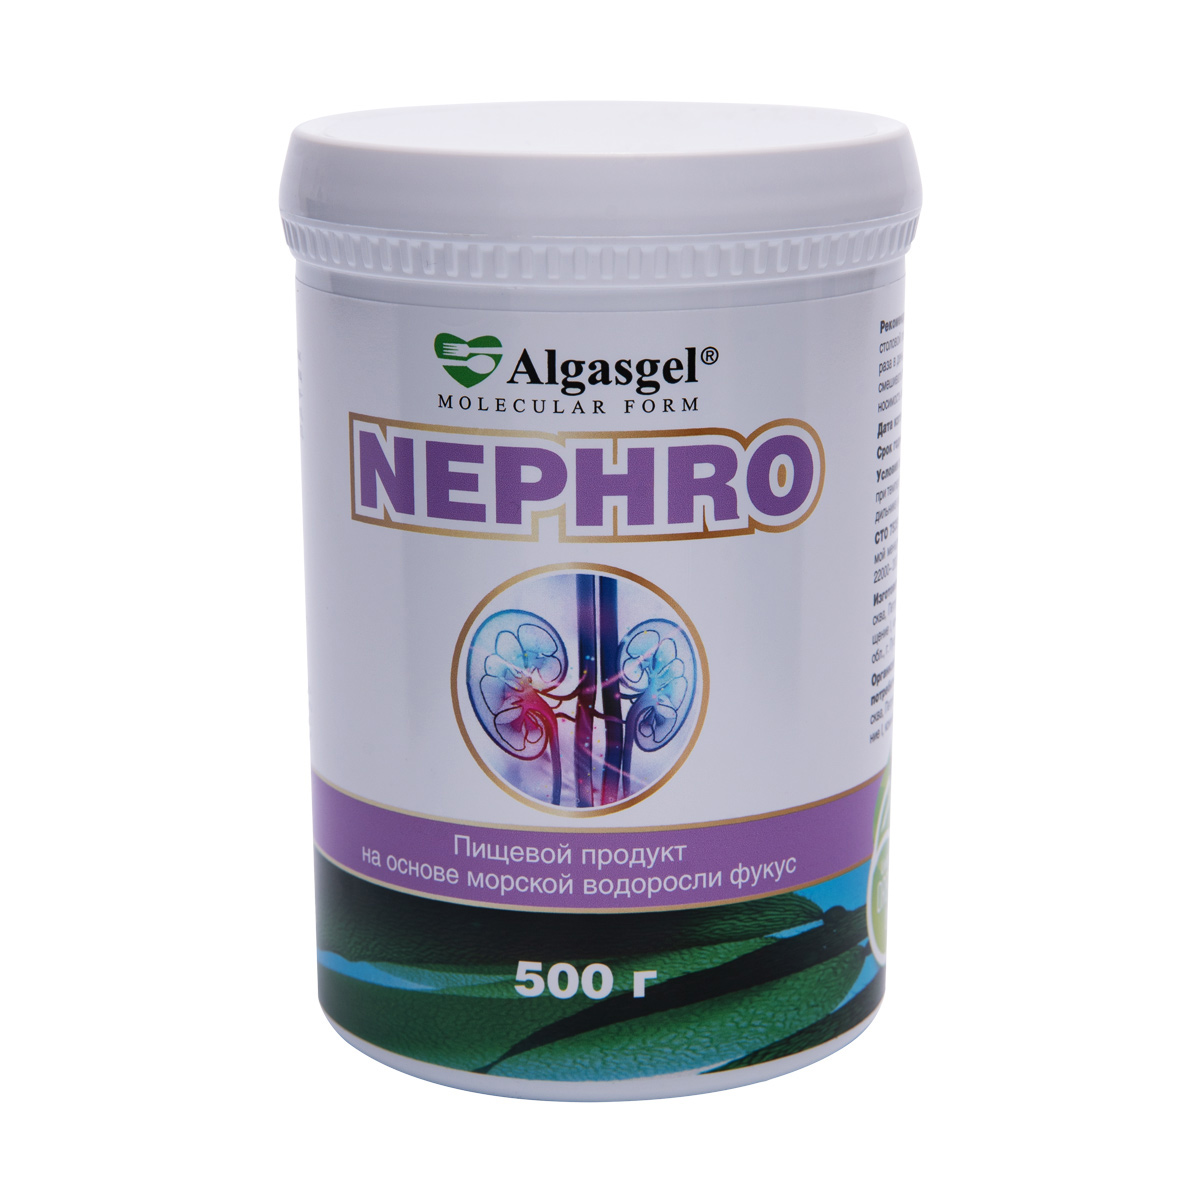 Algasgel Nephro для комплексного оздоровления почек и мочевыделительной системы (500 г), БАДы, БАДы для почек